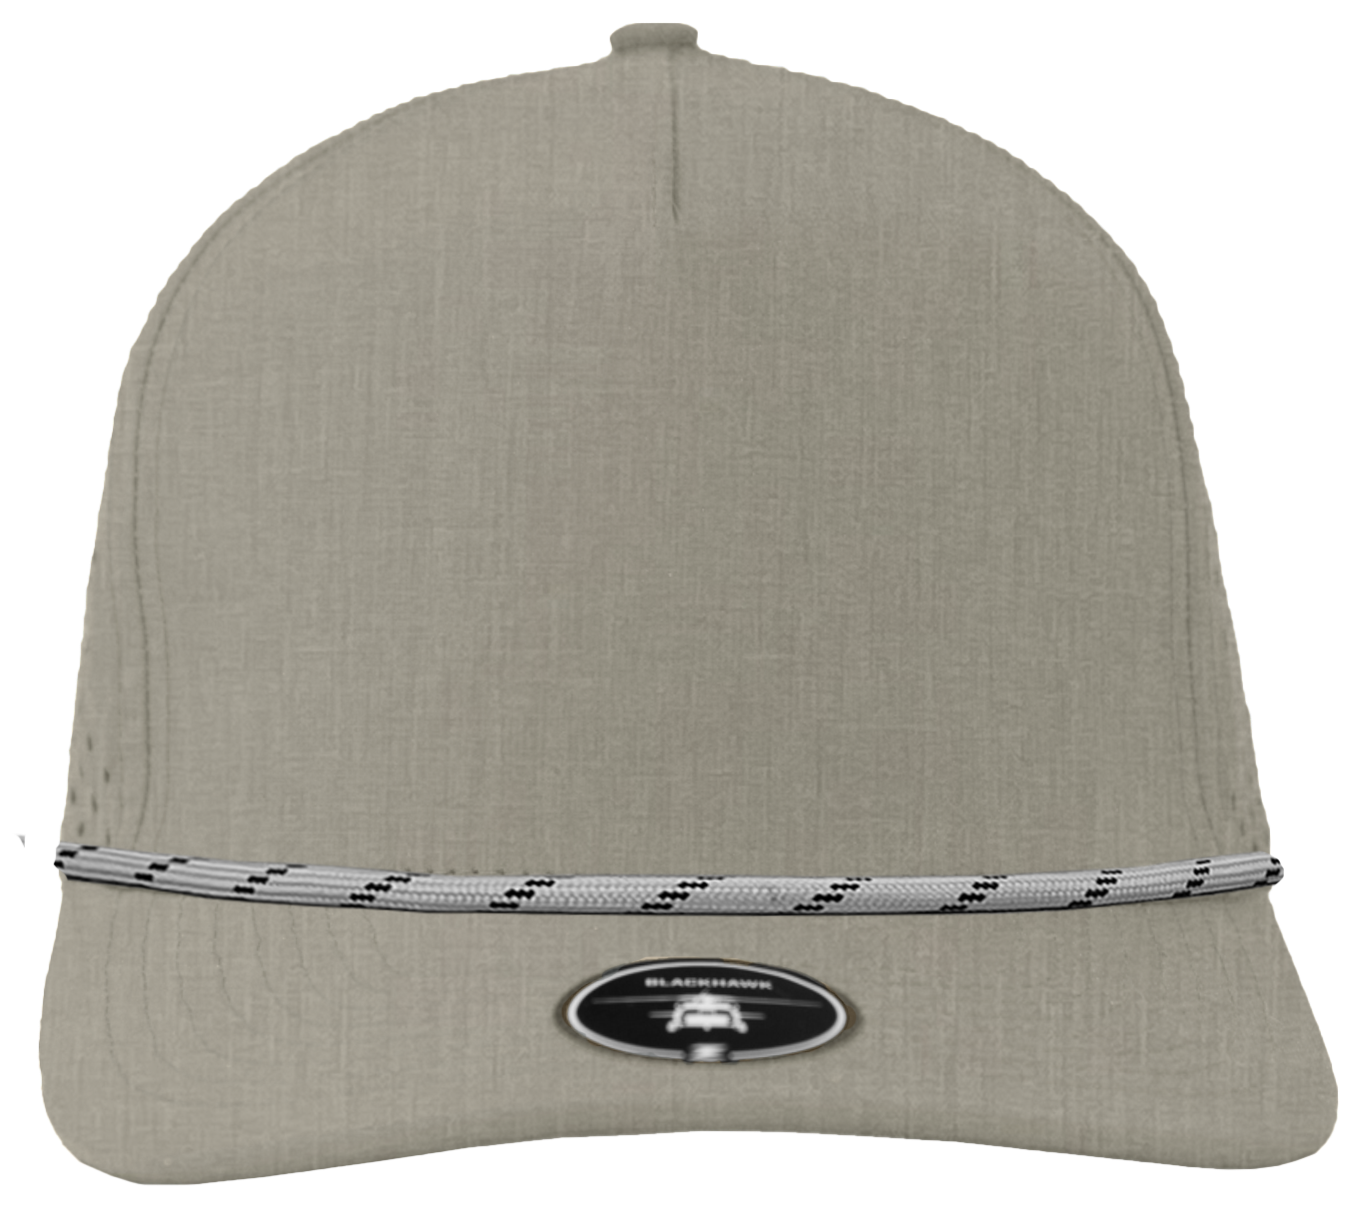 Blackhawk Heather grey Custom Hat  grey twisted rope brim snapback hat